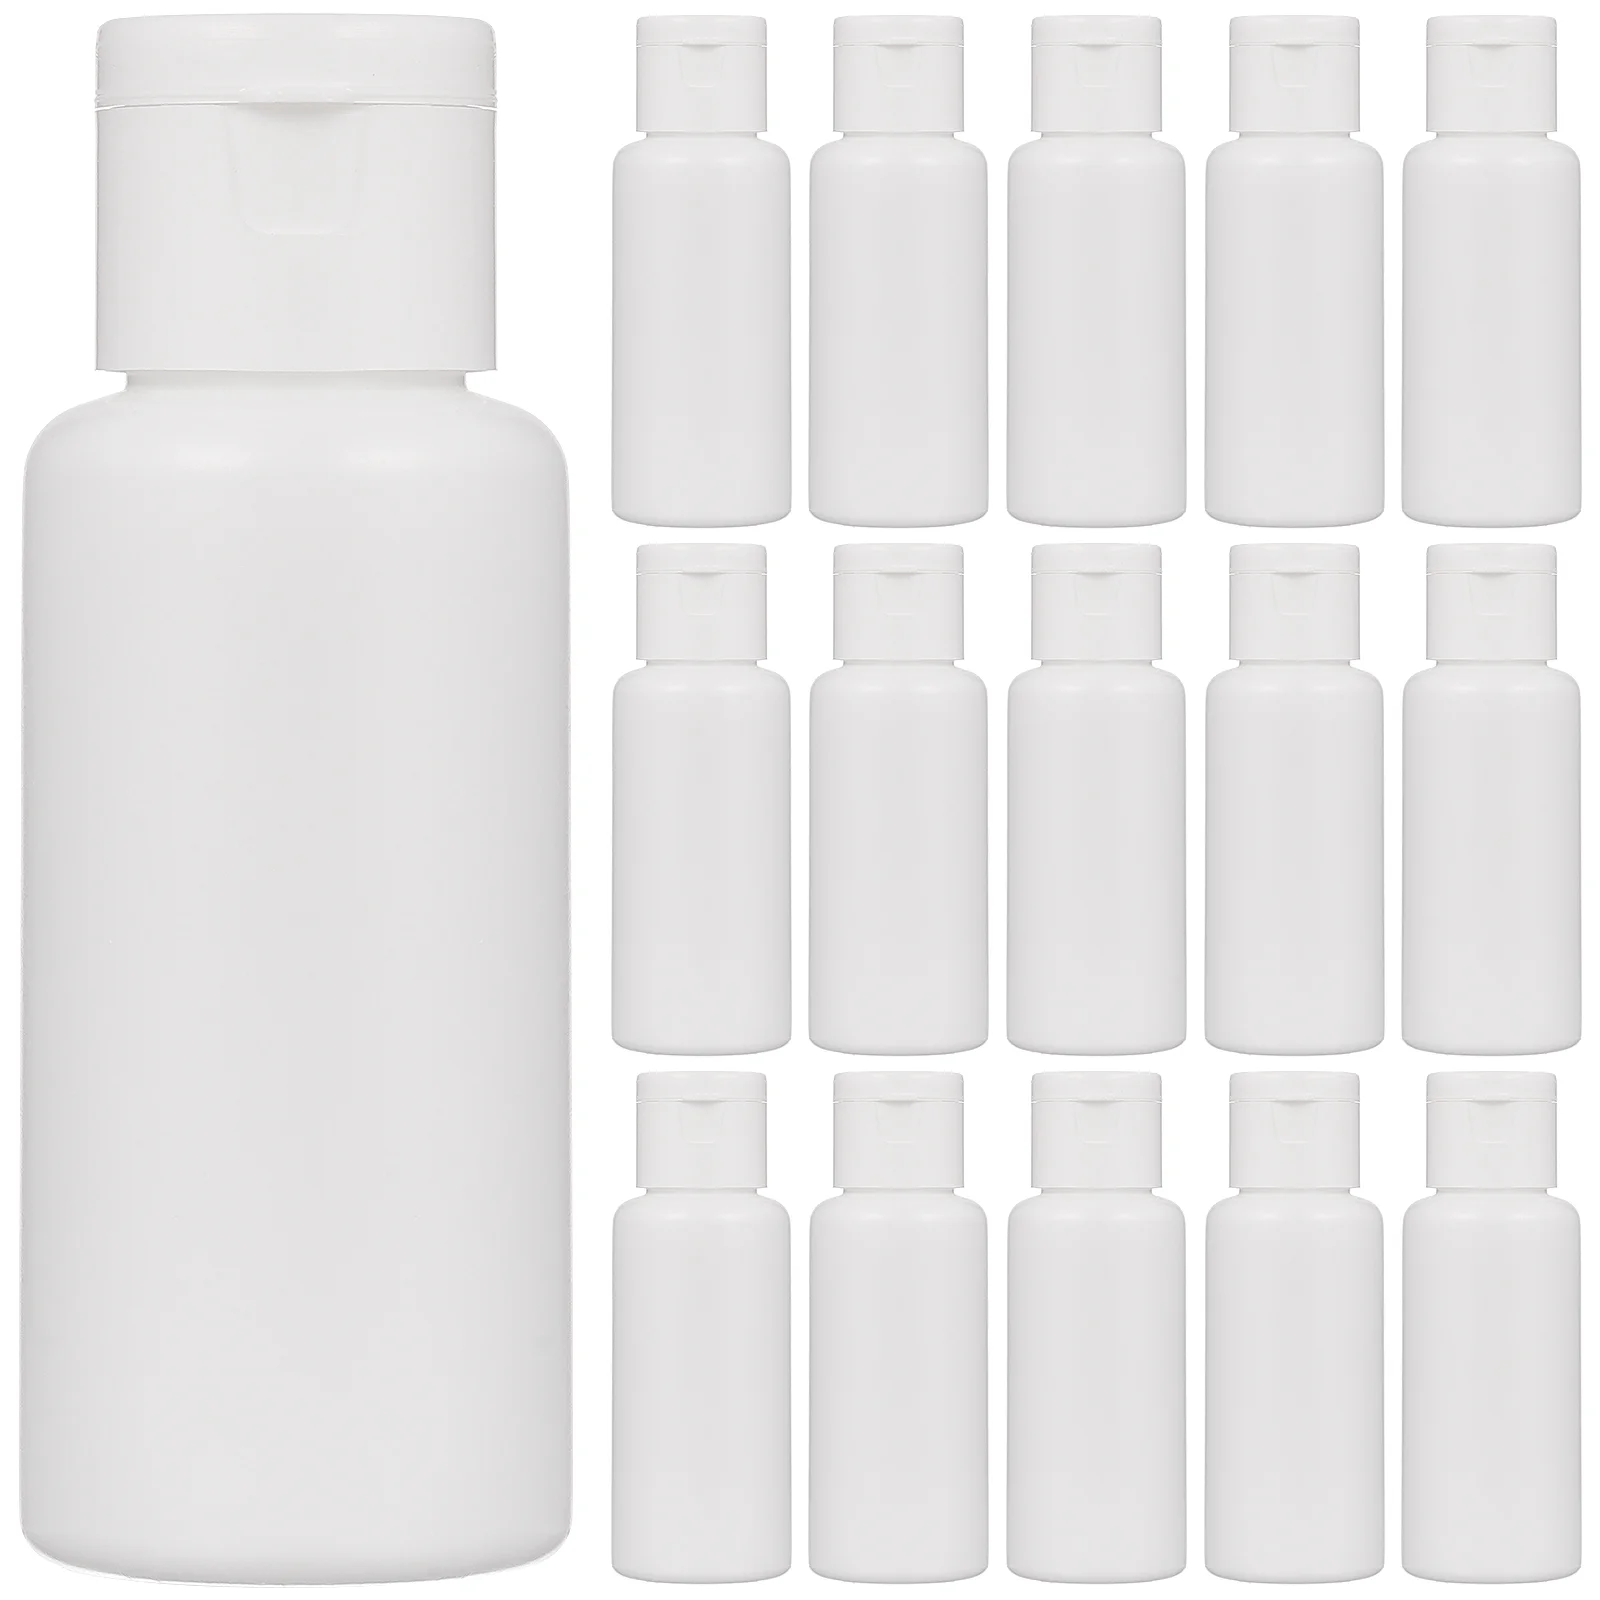 

Portable Travel Bottles Refillable 30ml Lotion Dispenser Bottles Shampoo Bottles for Travel 30pcs